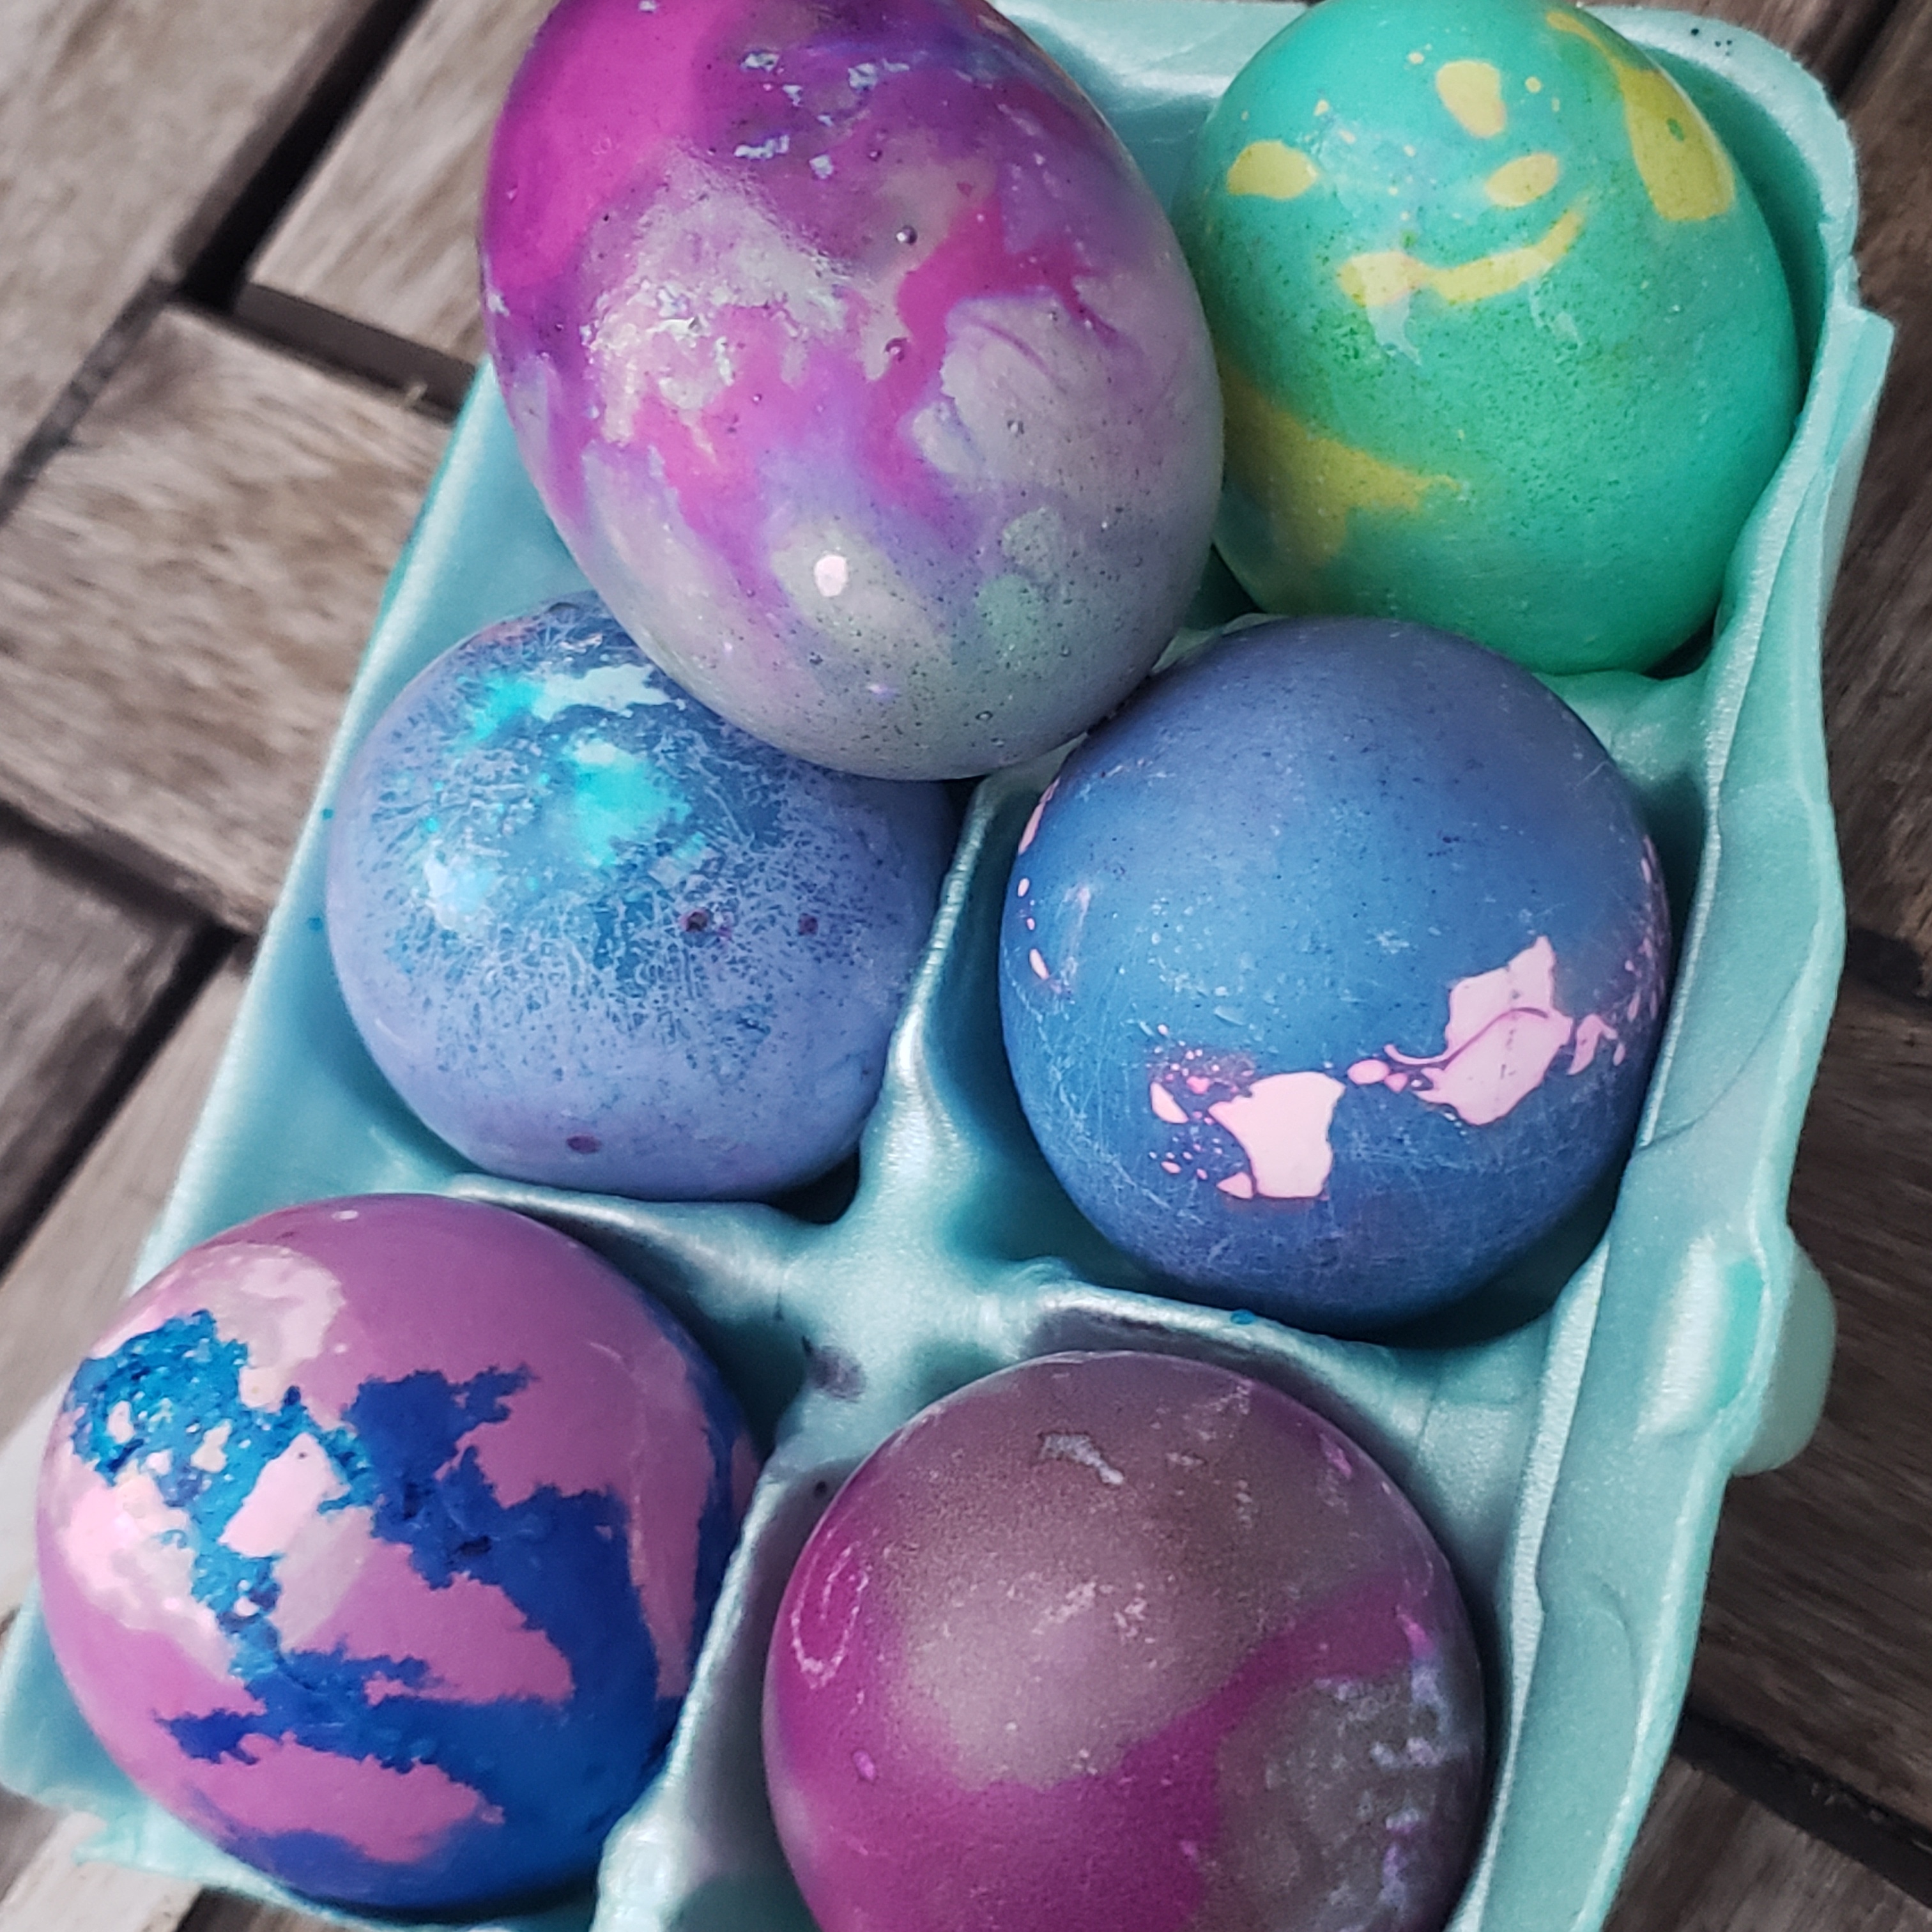 Можно красить яйца красками. Крашение яиц. Краска для яиц. Окрашивание яиц салфетками. Красим яйца пищевыми красителями.